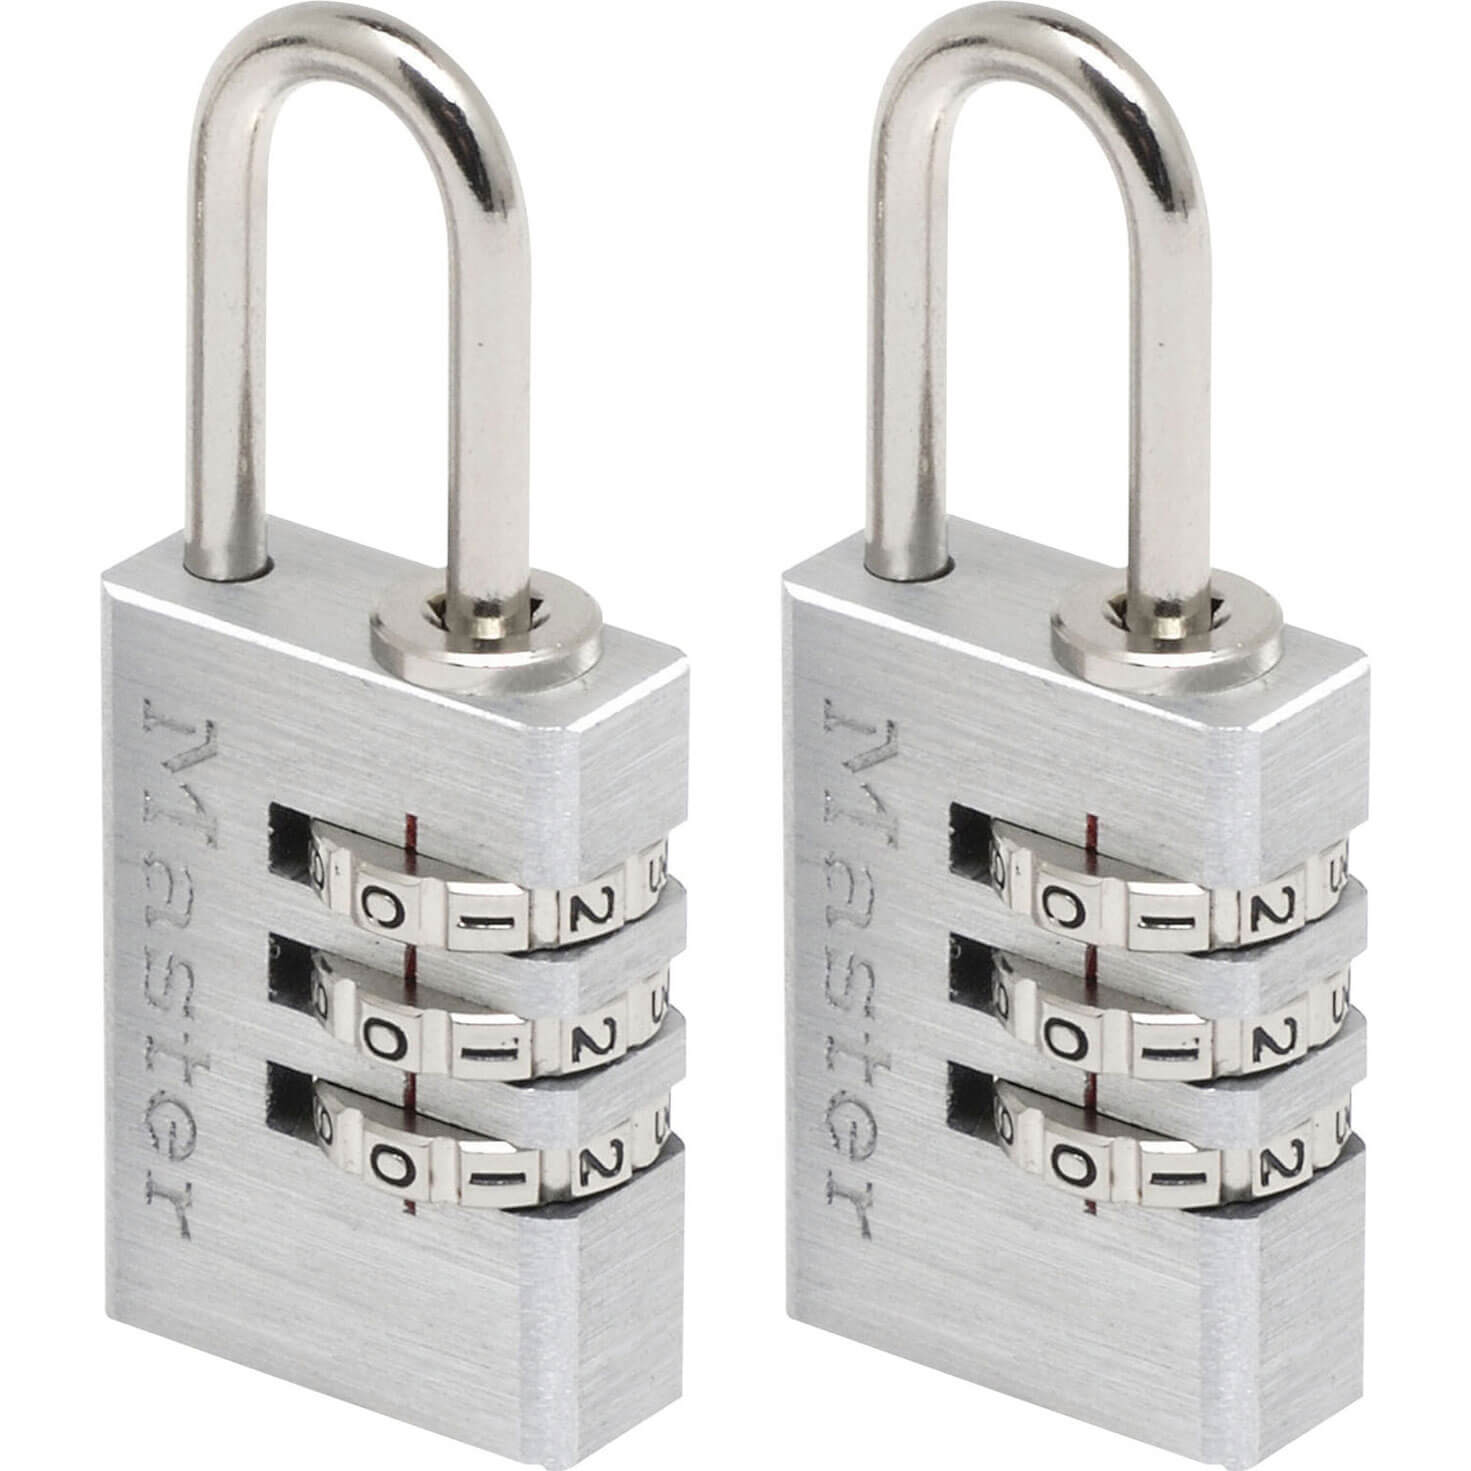 Masterlock Aluminium Combination Padlock Pack of 2 | Padlocks